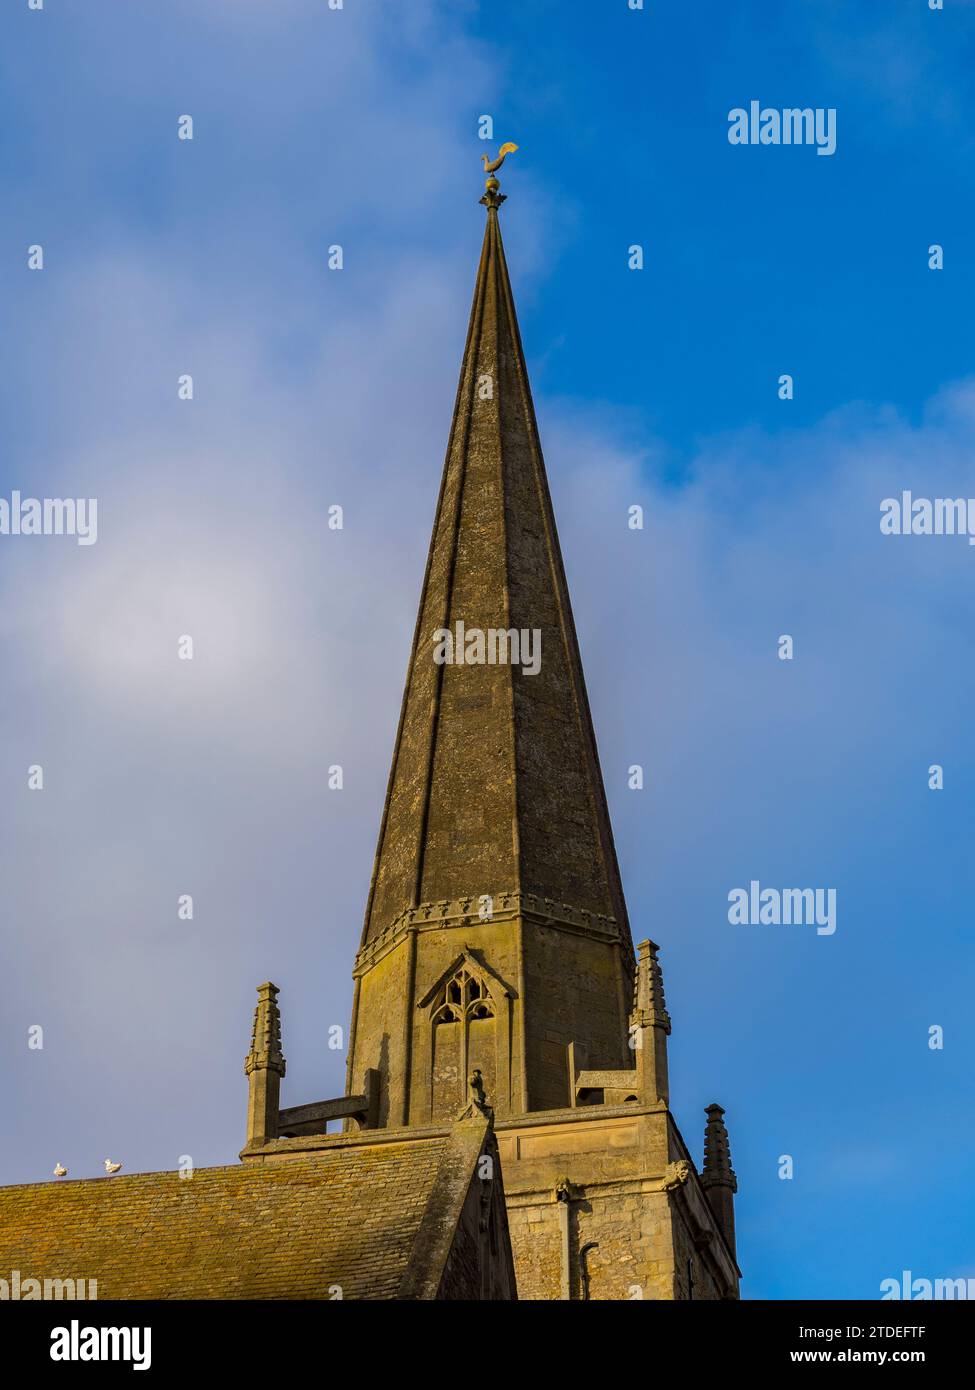 Der Turm der St. Helens Church, Abingdon-on-Thames, Oxfordshire, England, Vereinigtes Königreich, GB Stockfoto